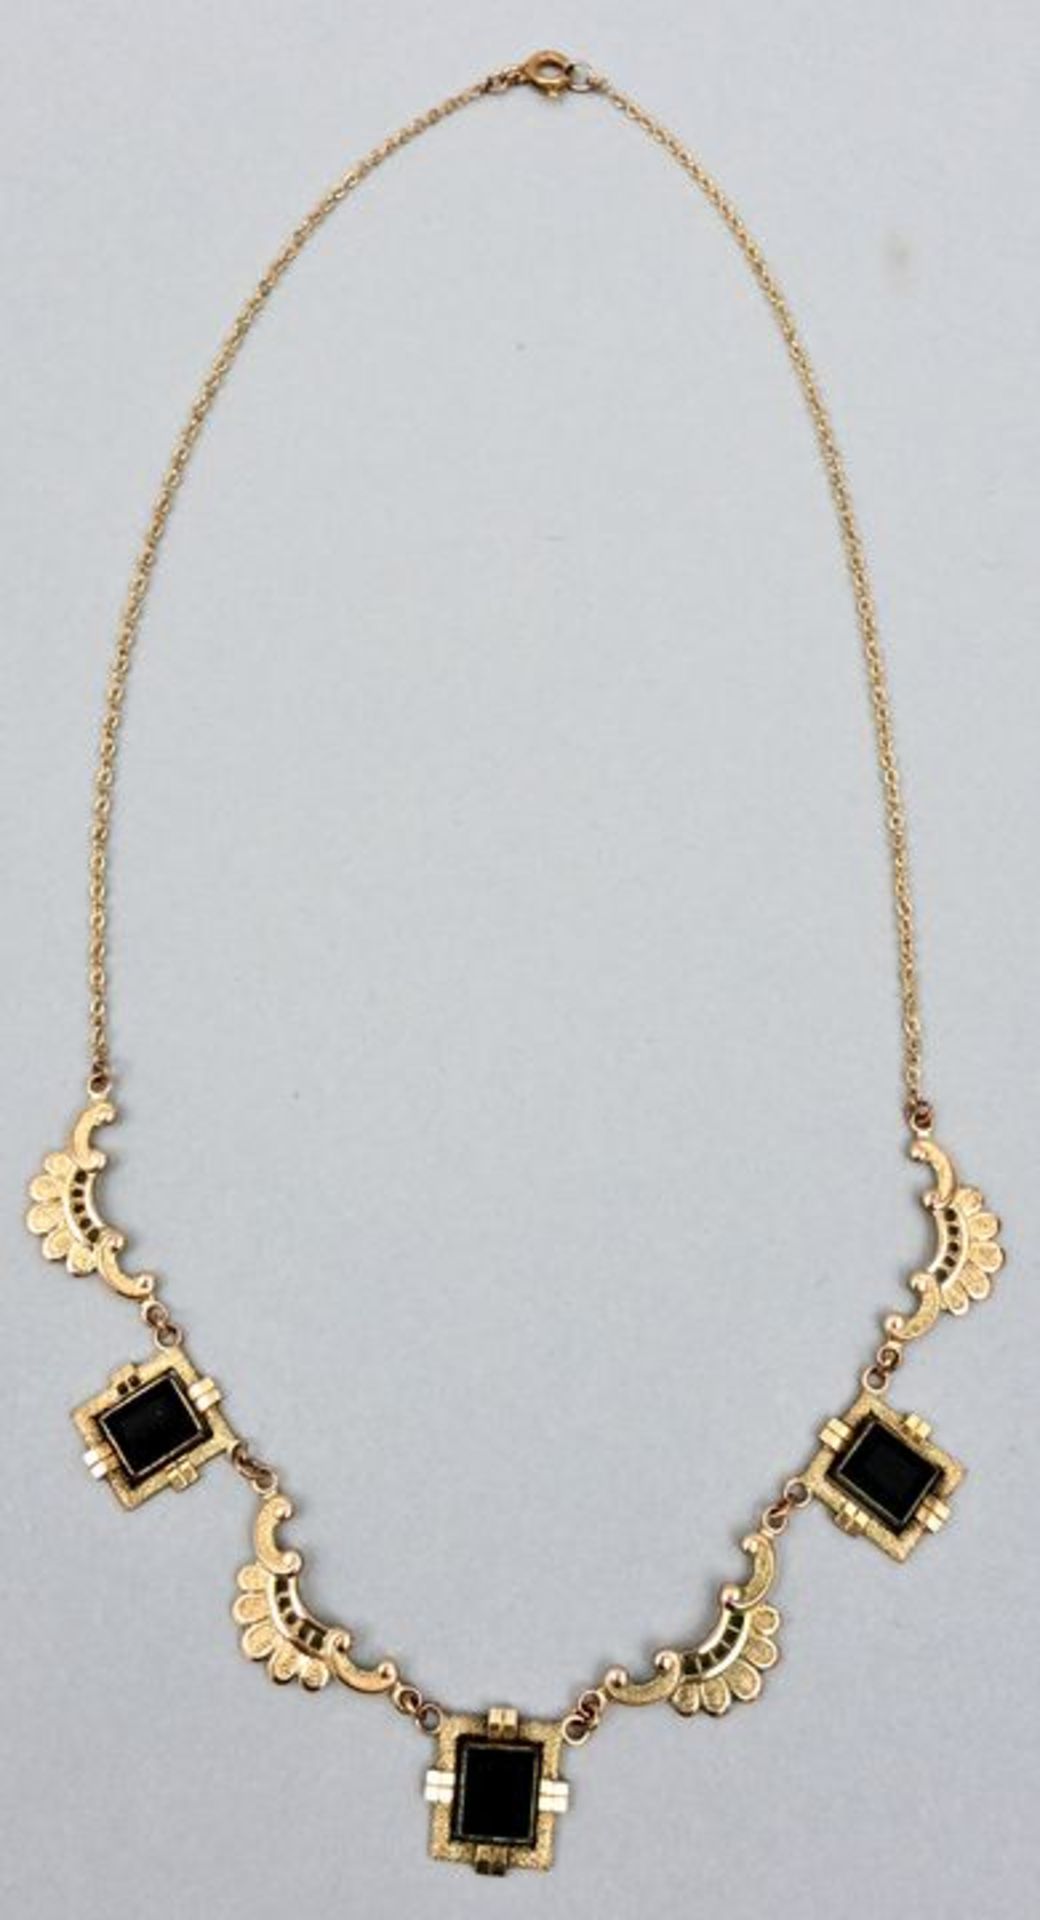 Halskette, drei gr. Granate necklace